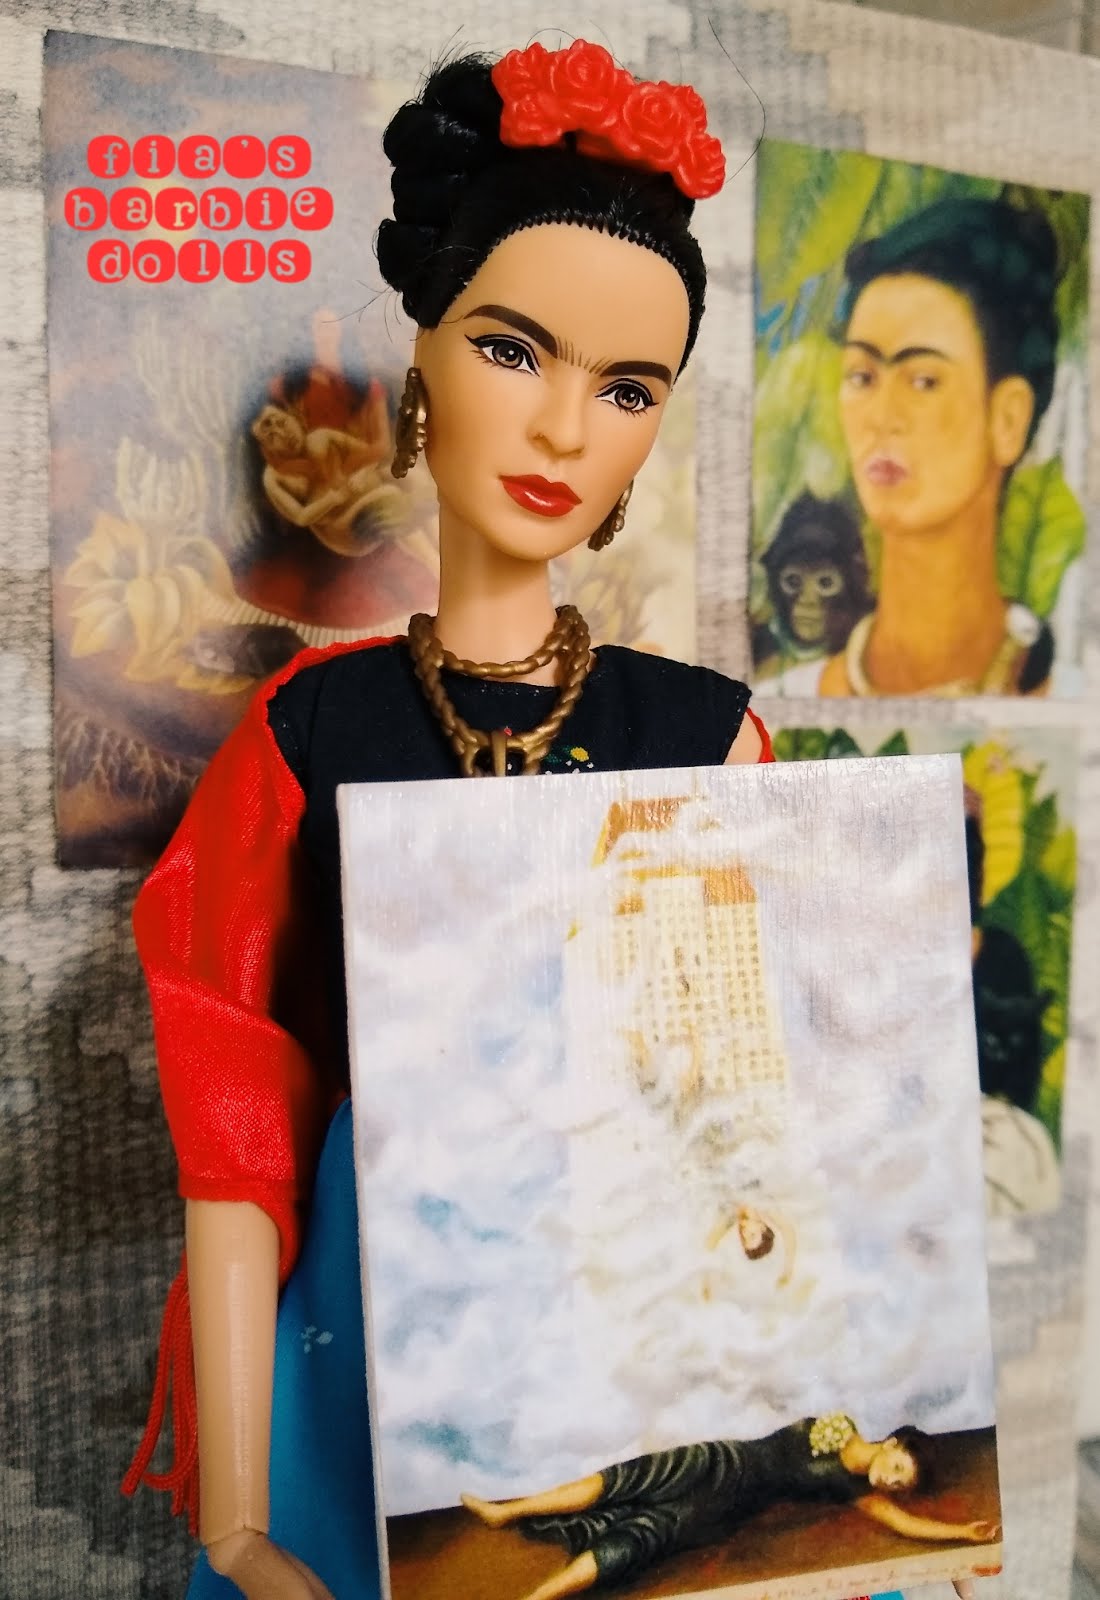 Barbie® Inspiring Women™ Series Frida Kahlo Doll